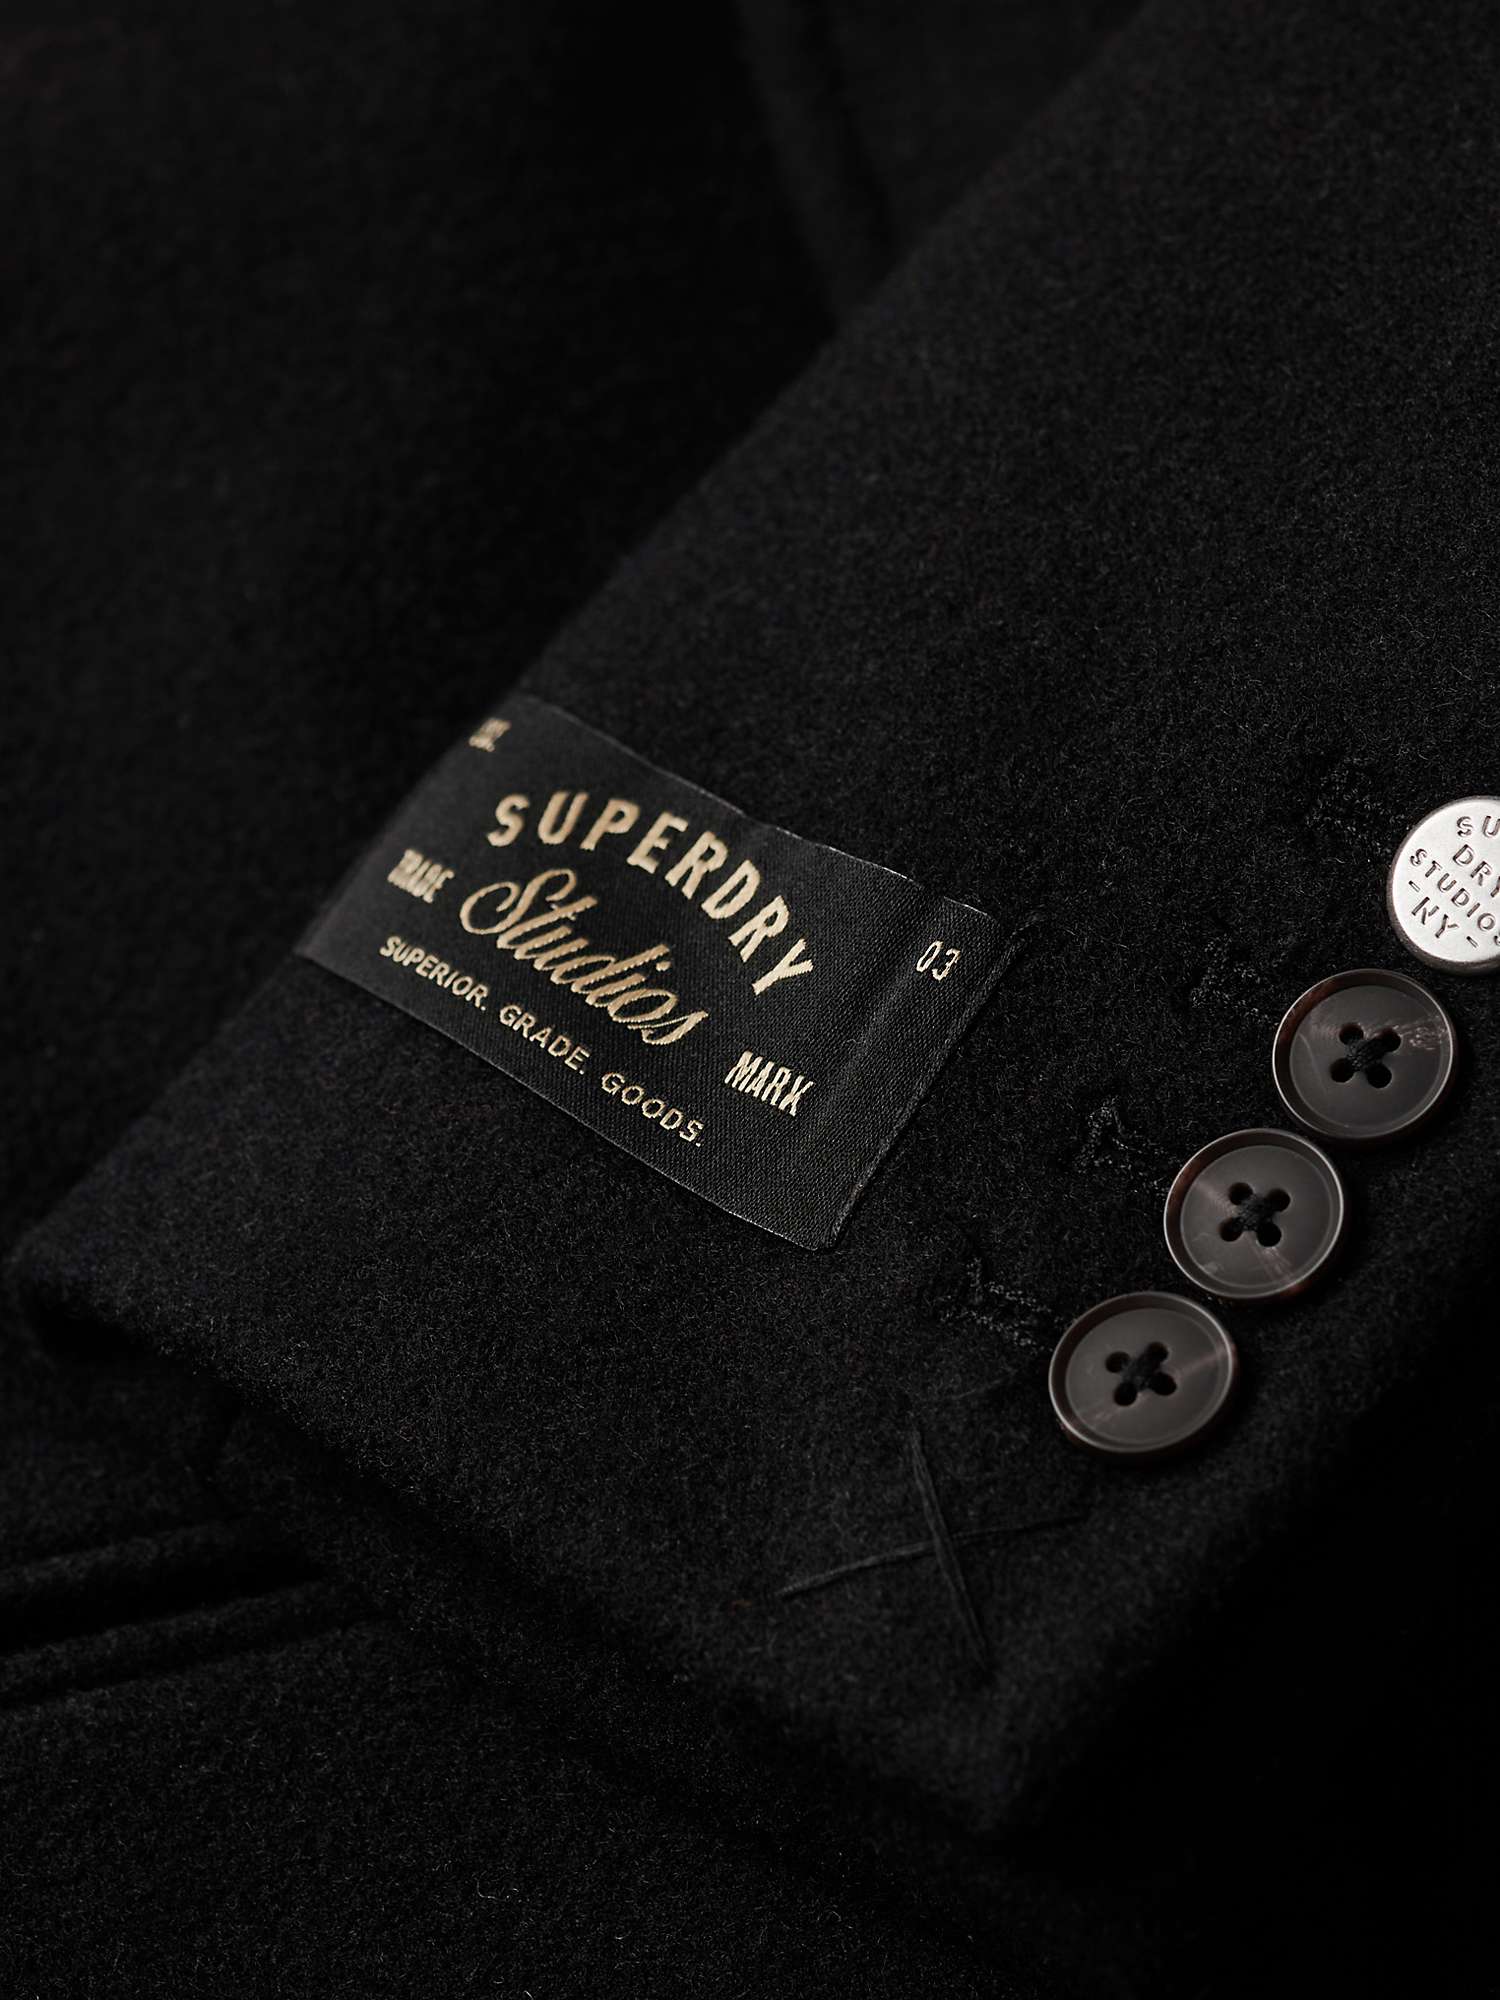 Buy Superdry 2 In 1 Wool Town Coat, Black Online at johnlewis.com